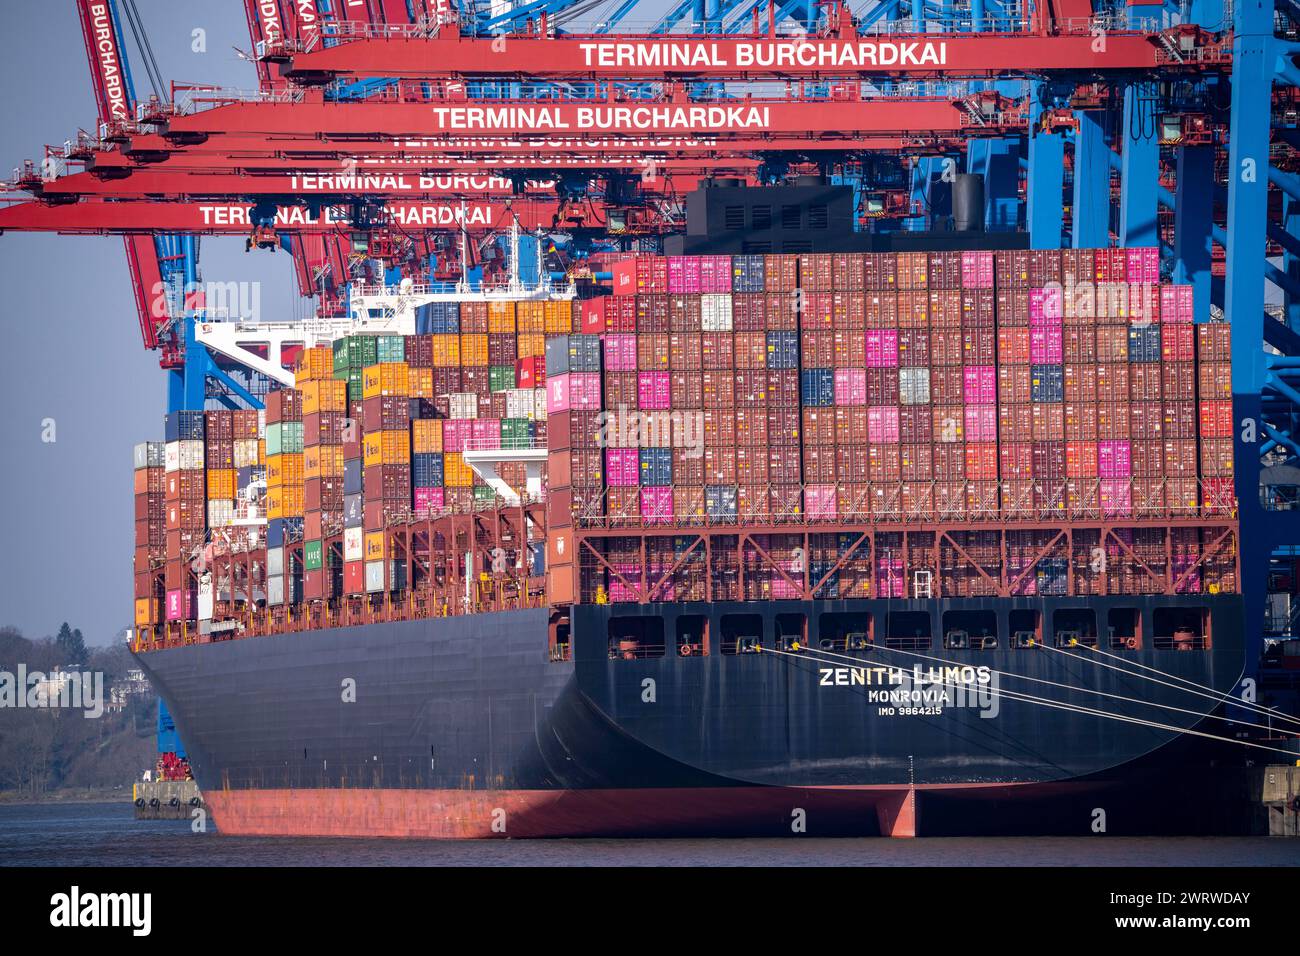 Hafen Hamburg, Waltershofer Hafen, HHLA Containerterminal Burchardkai, Containerfrachter Zenith Lumos, Hamburg, Deutschland Stockfoto